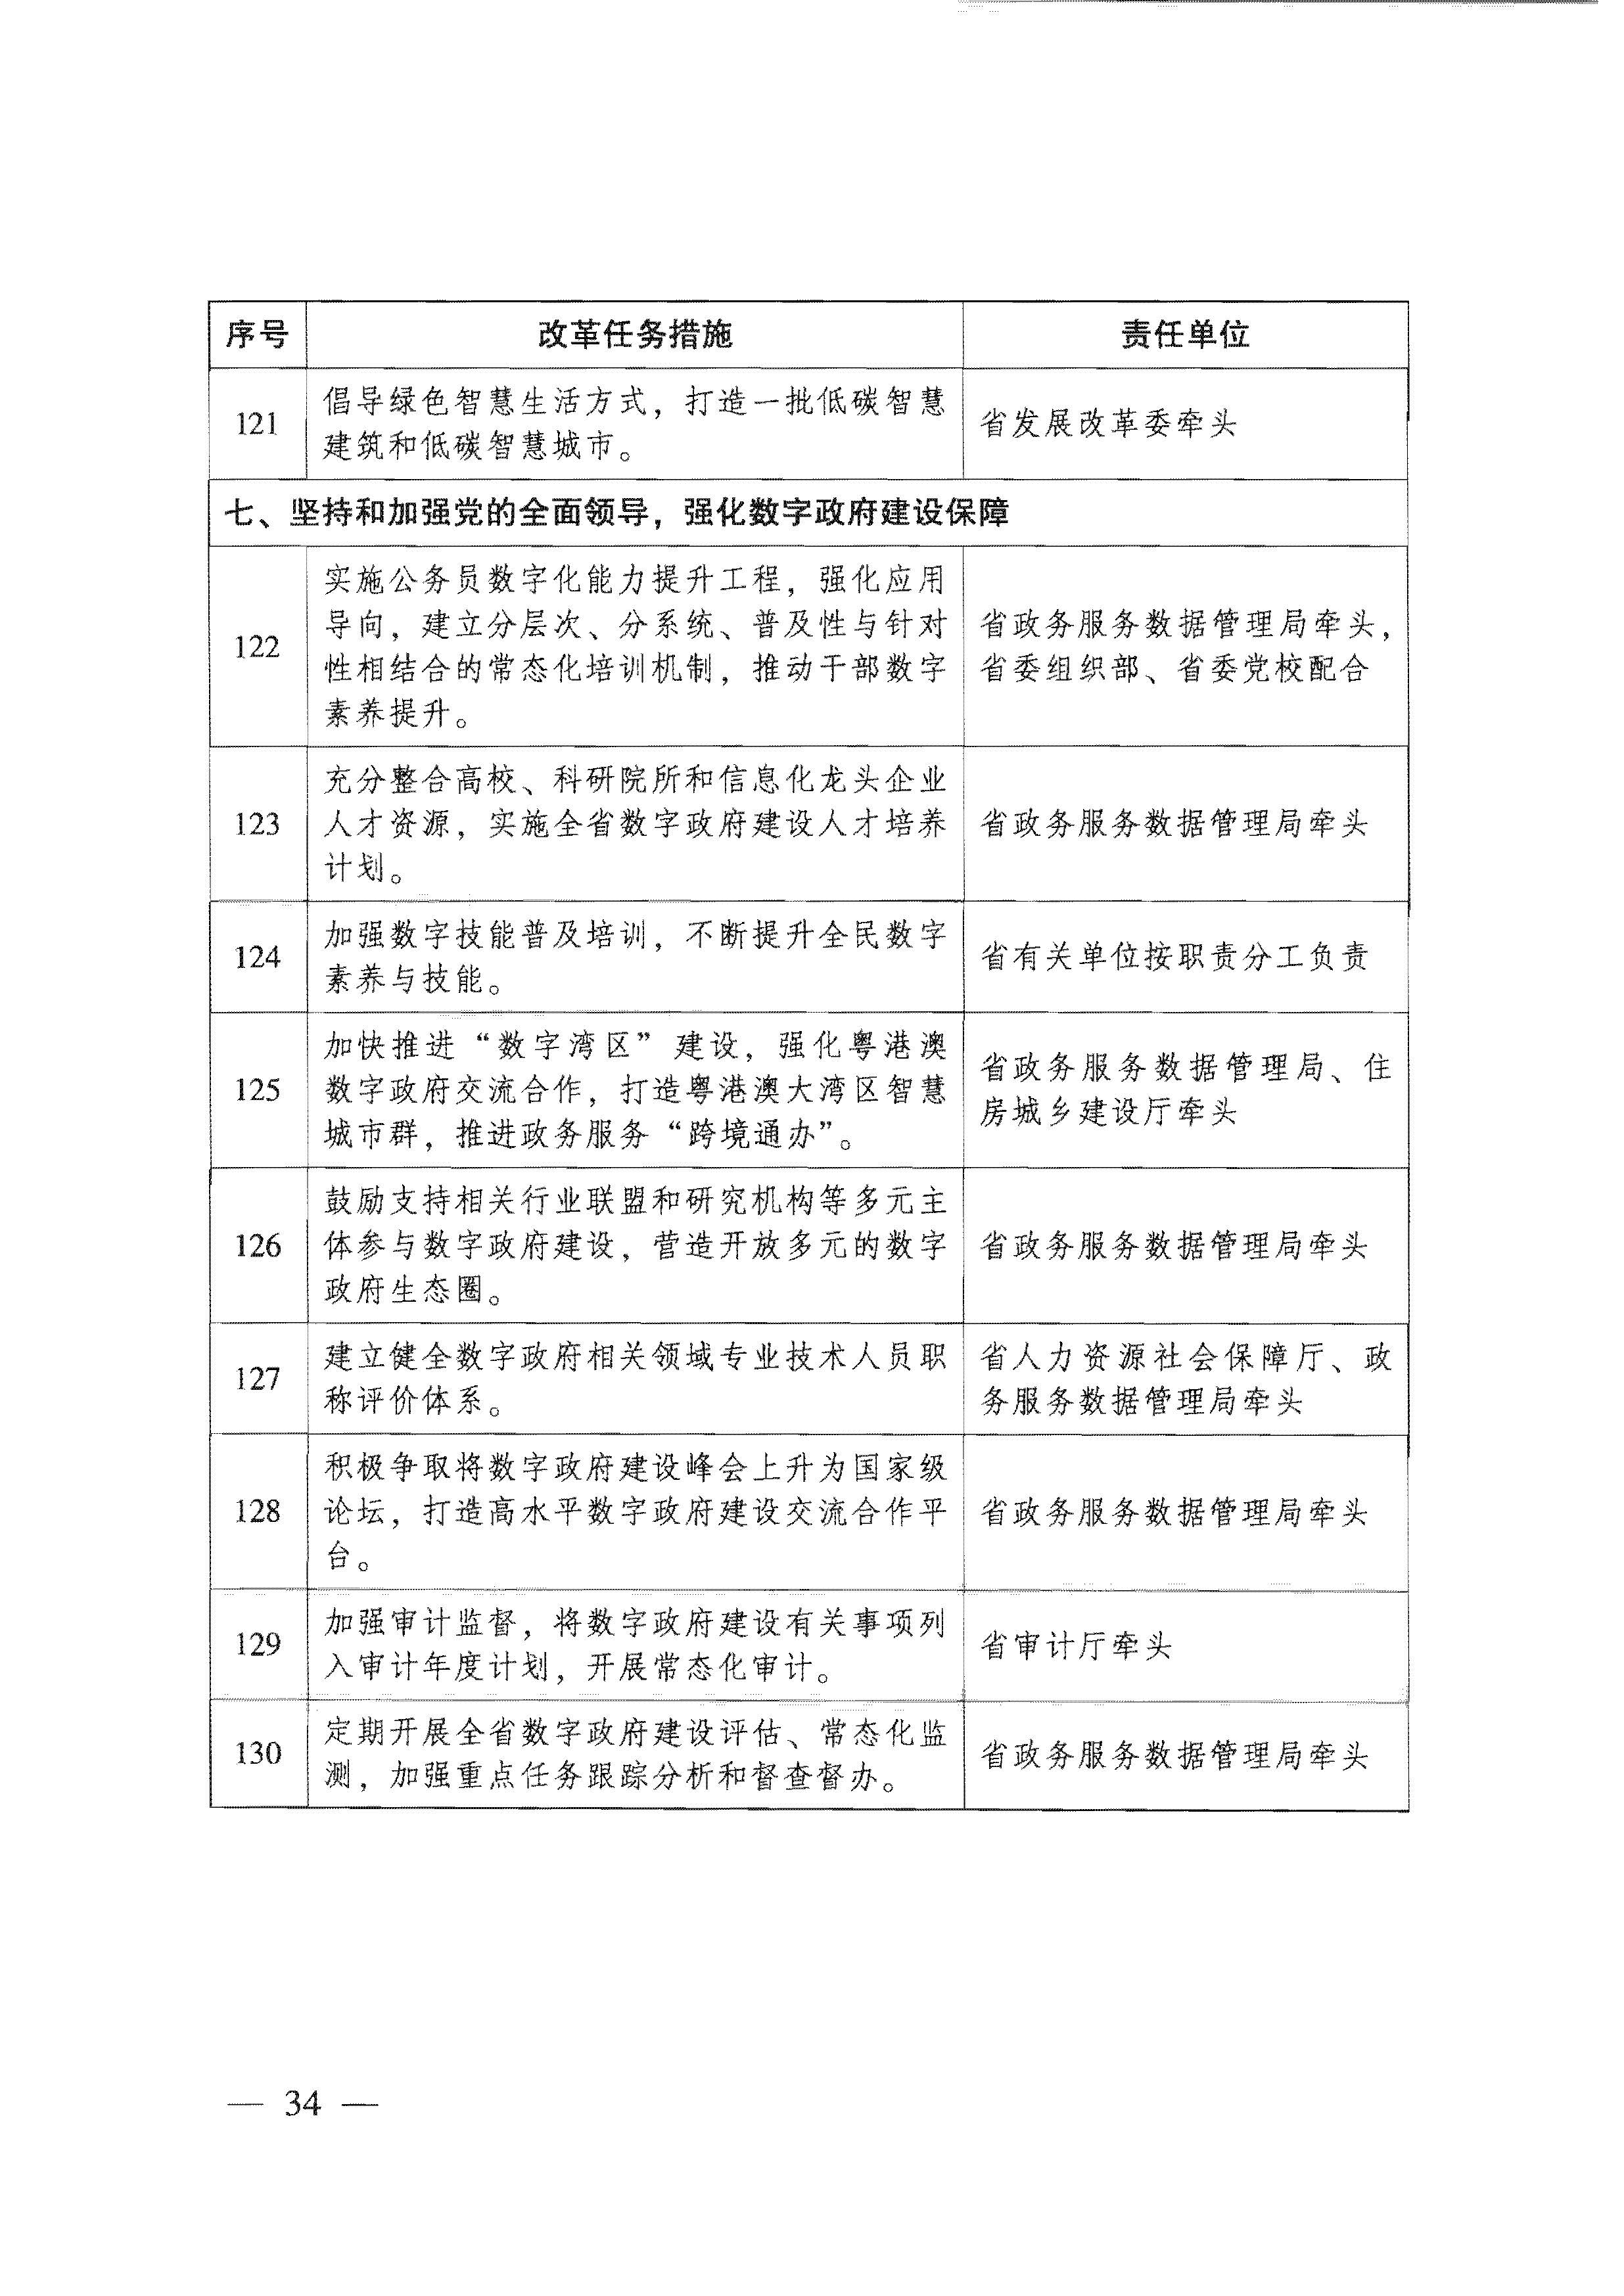 广东省人民政府关于进一步深化数字政府改革建设的实施意见_页面_34.jpg